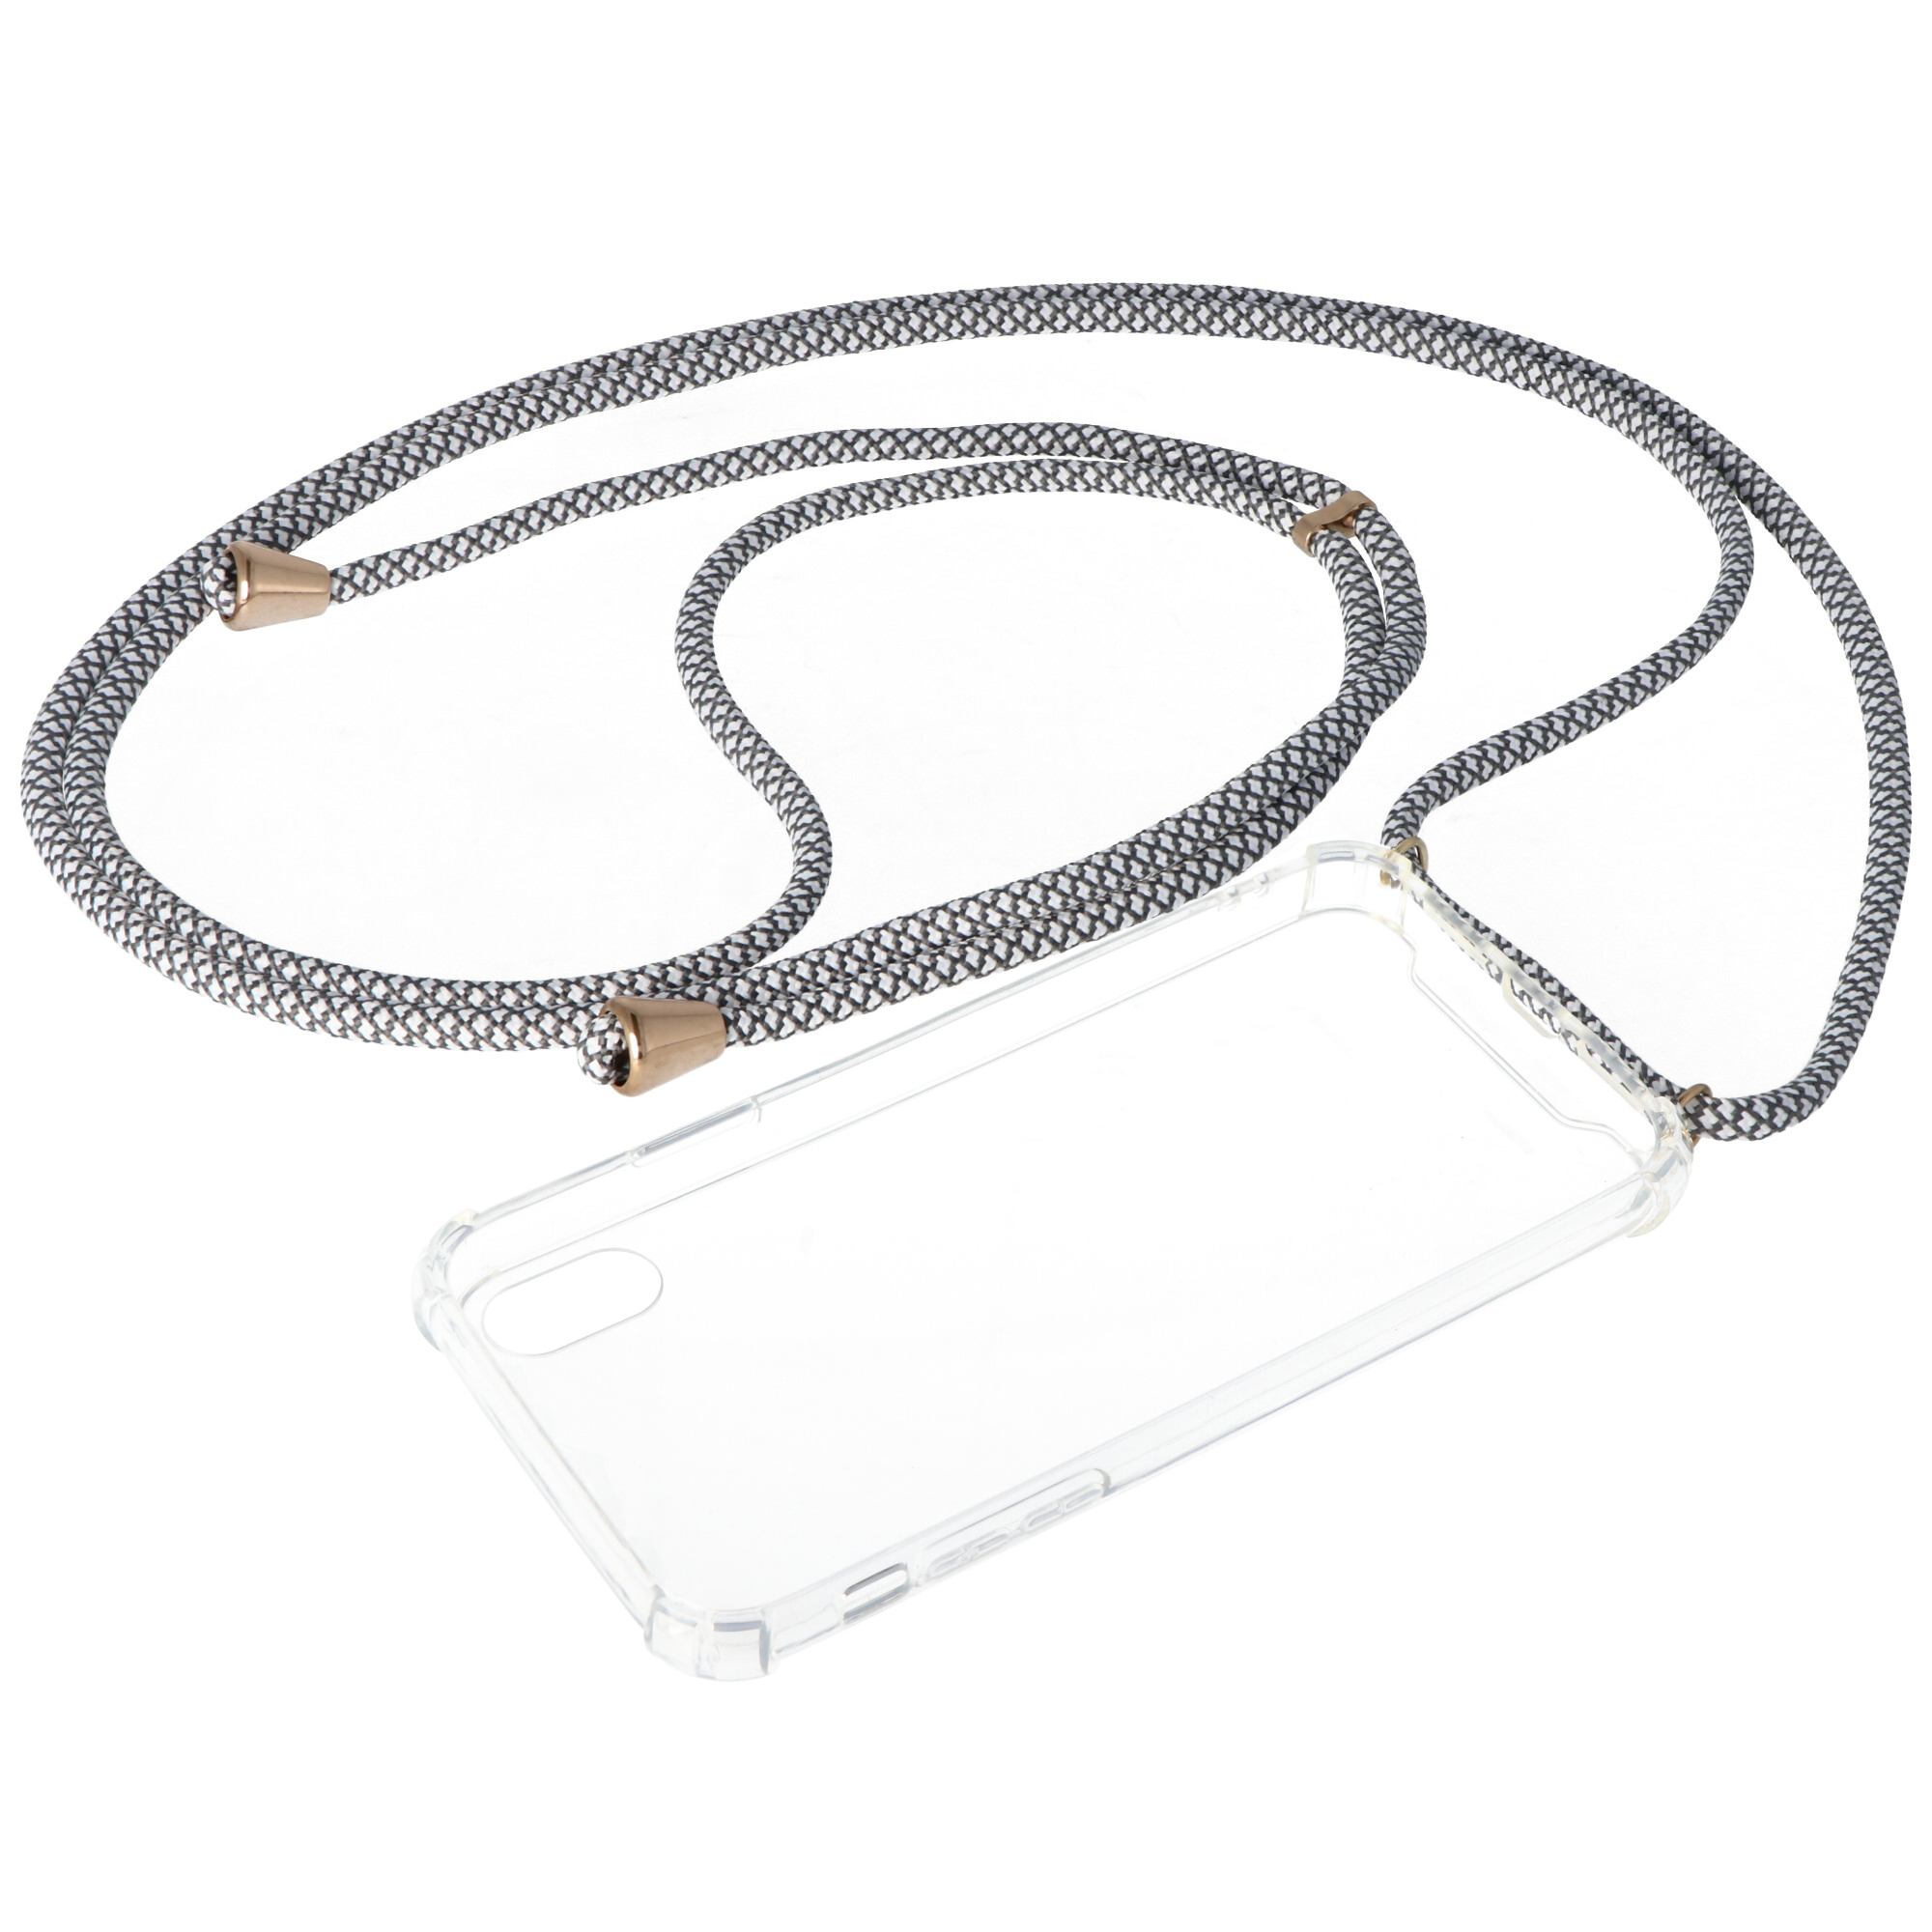 Necklace Case passend für Apple iPhone XR, Smartphonehülle mit Kordel grau,weiß zum Umhängen